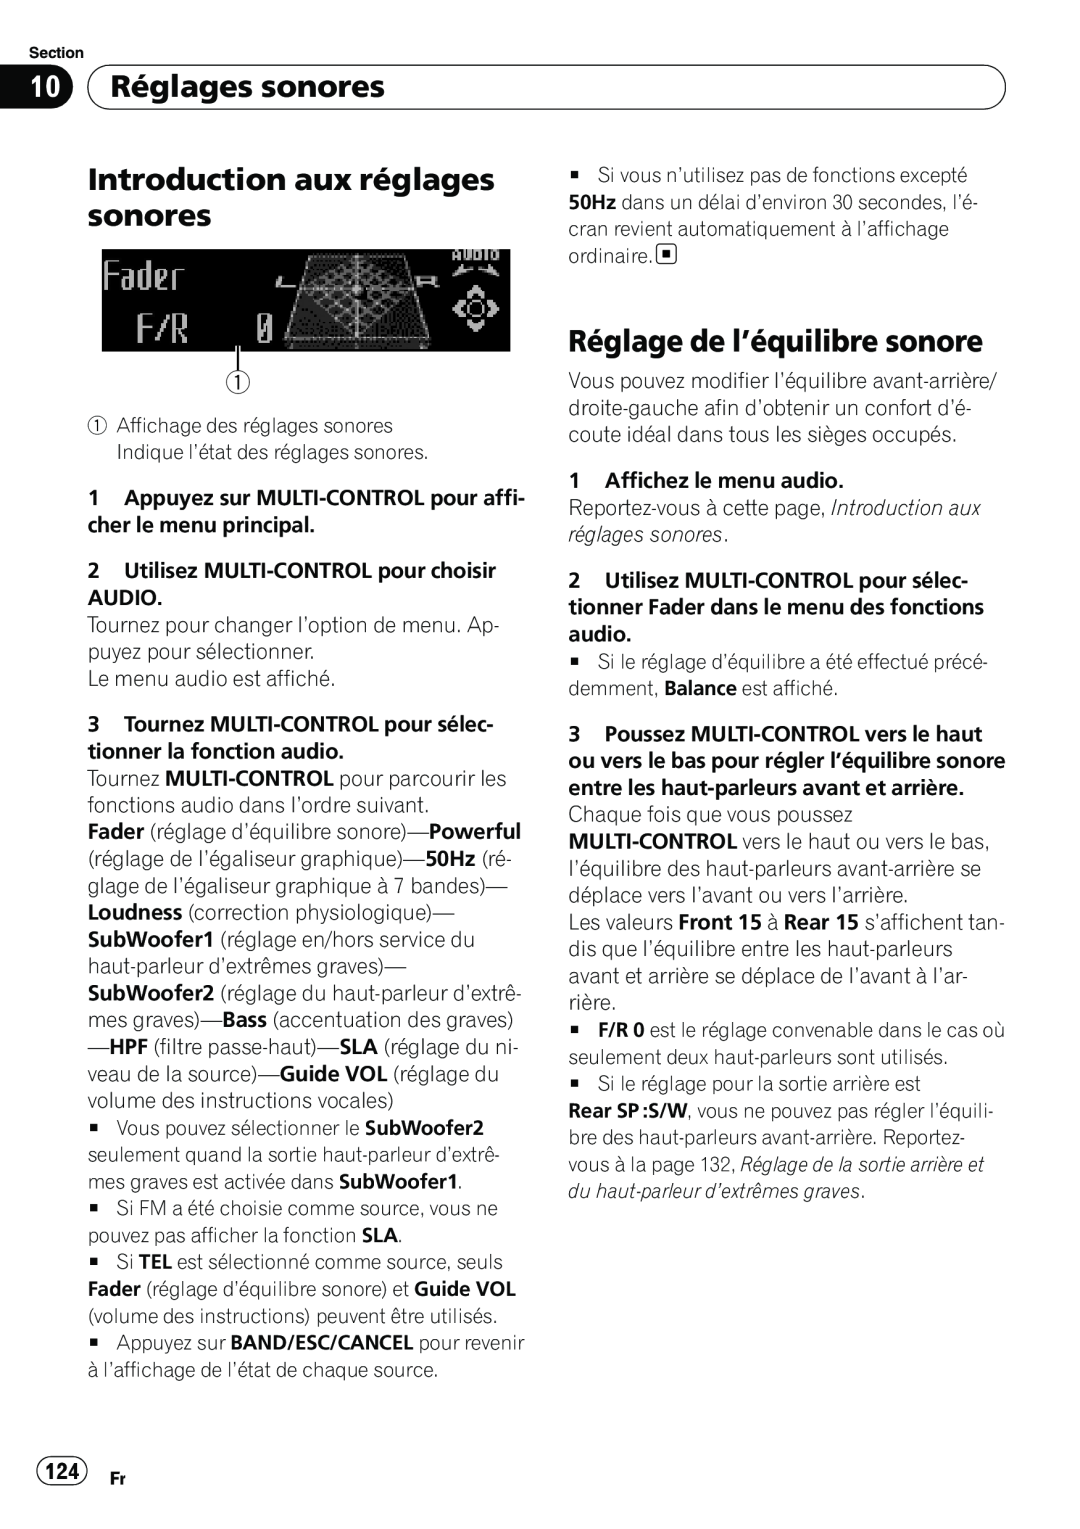 Pioneer DEH-P7100BT operation manual 10 Réglages sonores, Introduction aux réglages, Réglage de l’équilibre sonore, 124 Fr 